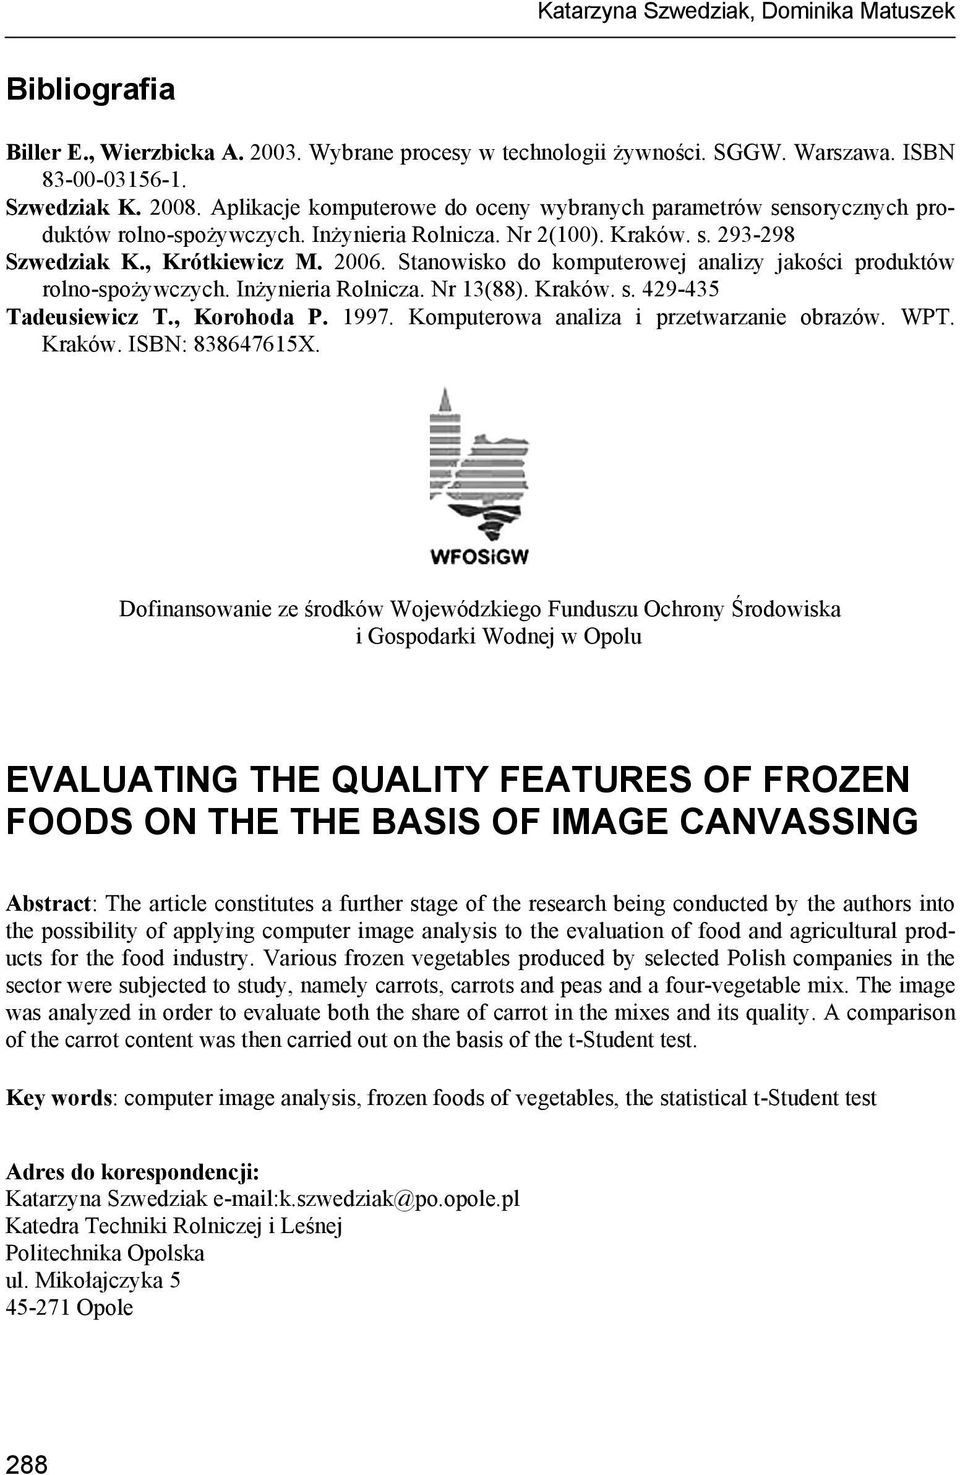 Stanowisko do komputerowej analizy jakości produktów rolno-spożywczych. Inżynieria Rolnicza. Nr 13(88). Kraków. s. 429-435 Tadeusiewicz T., Korohoda P. 1997.